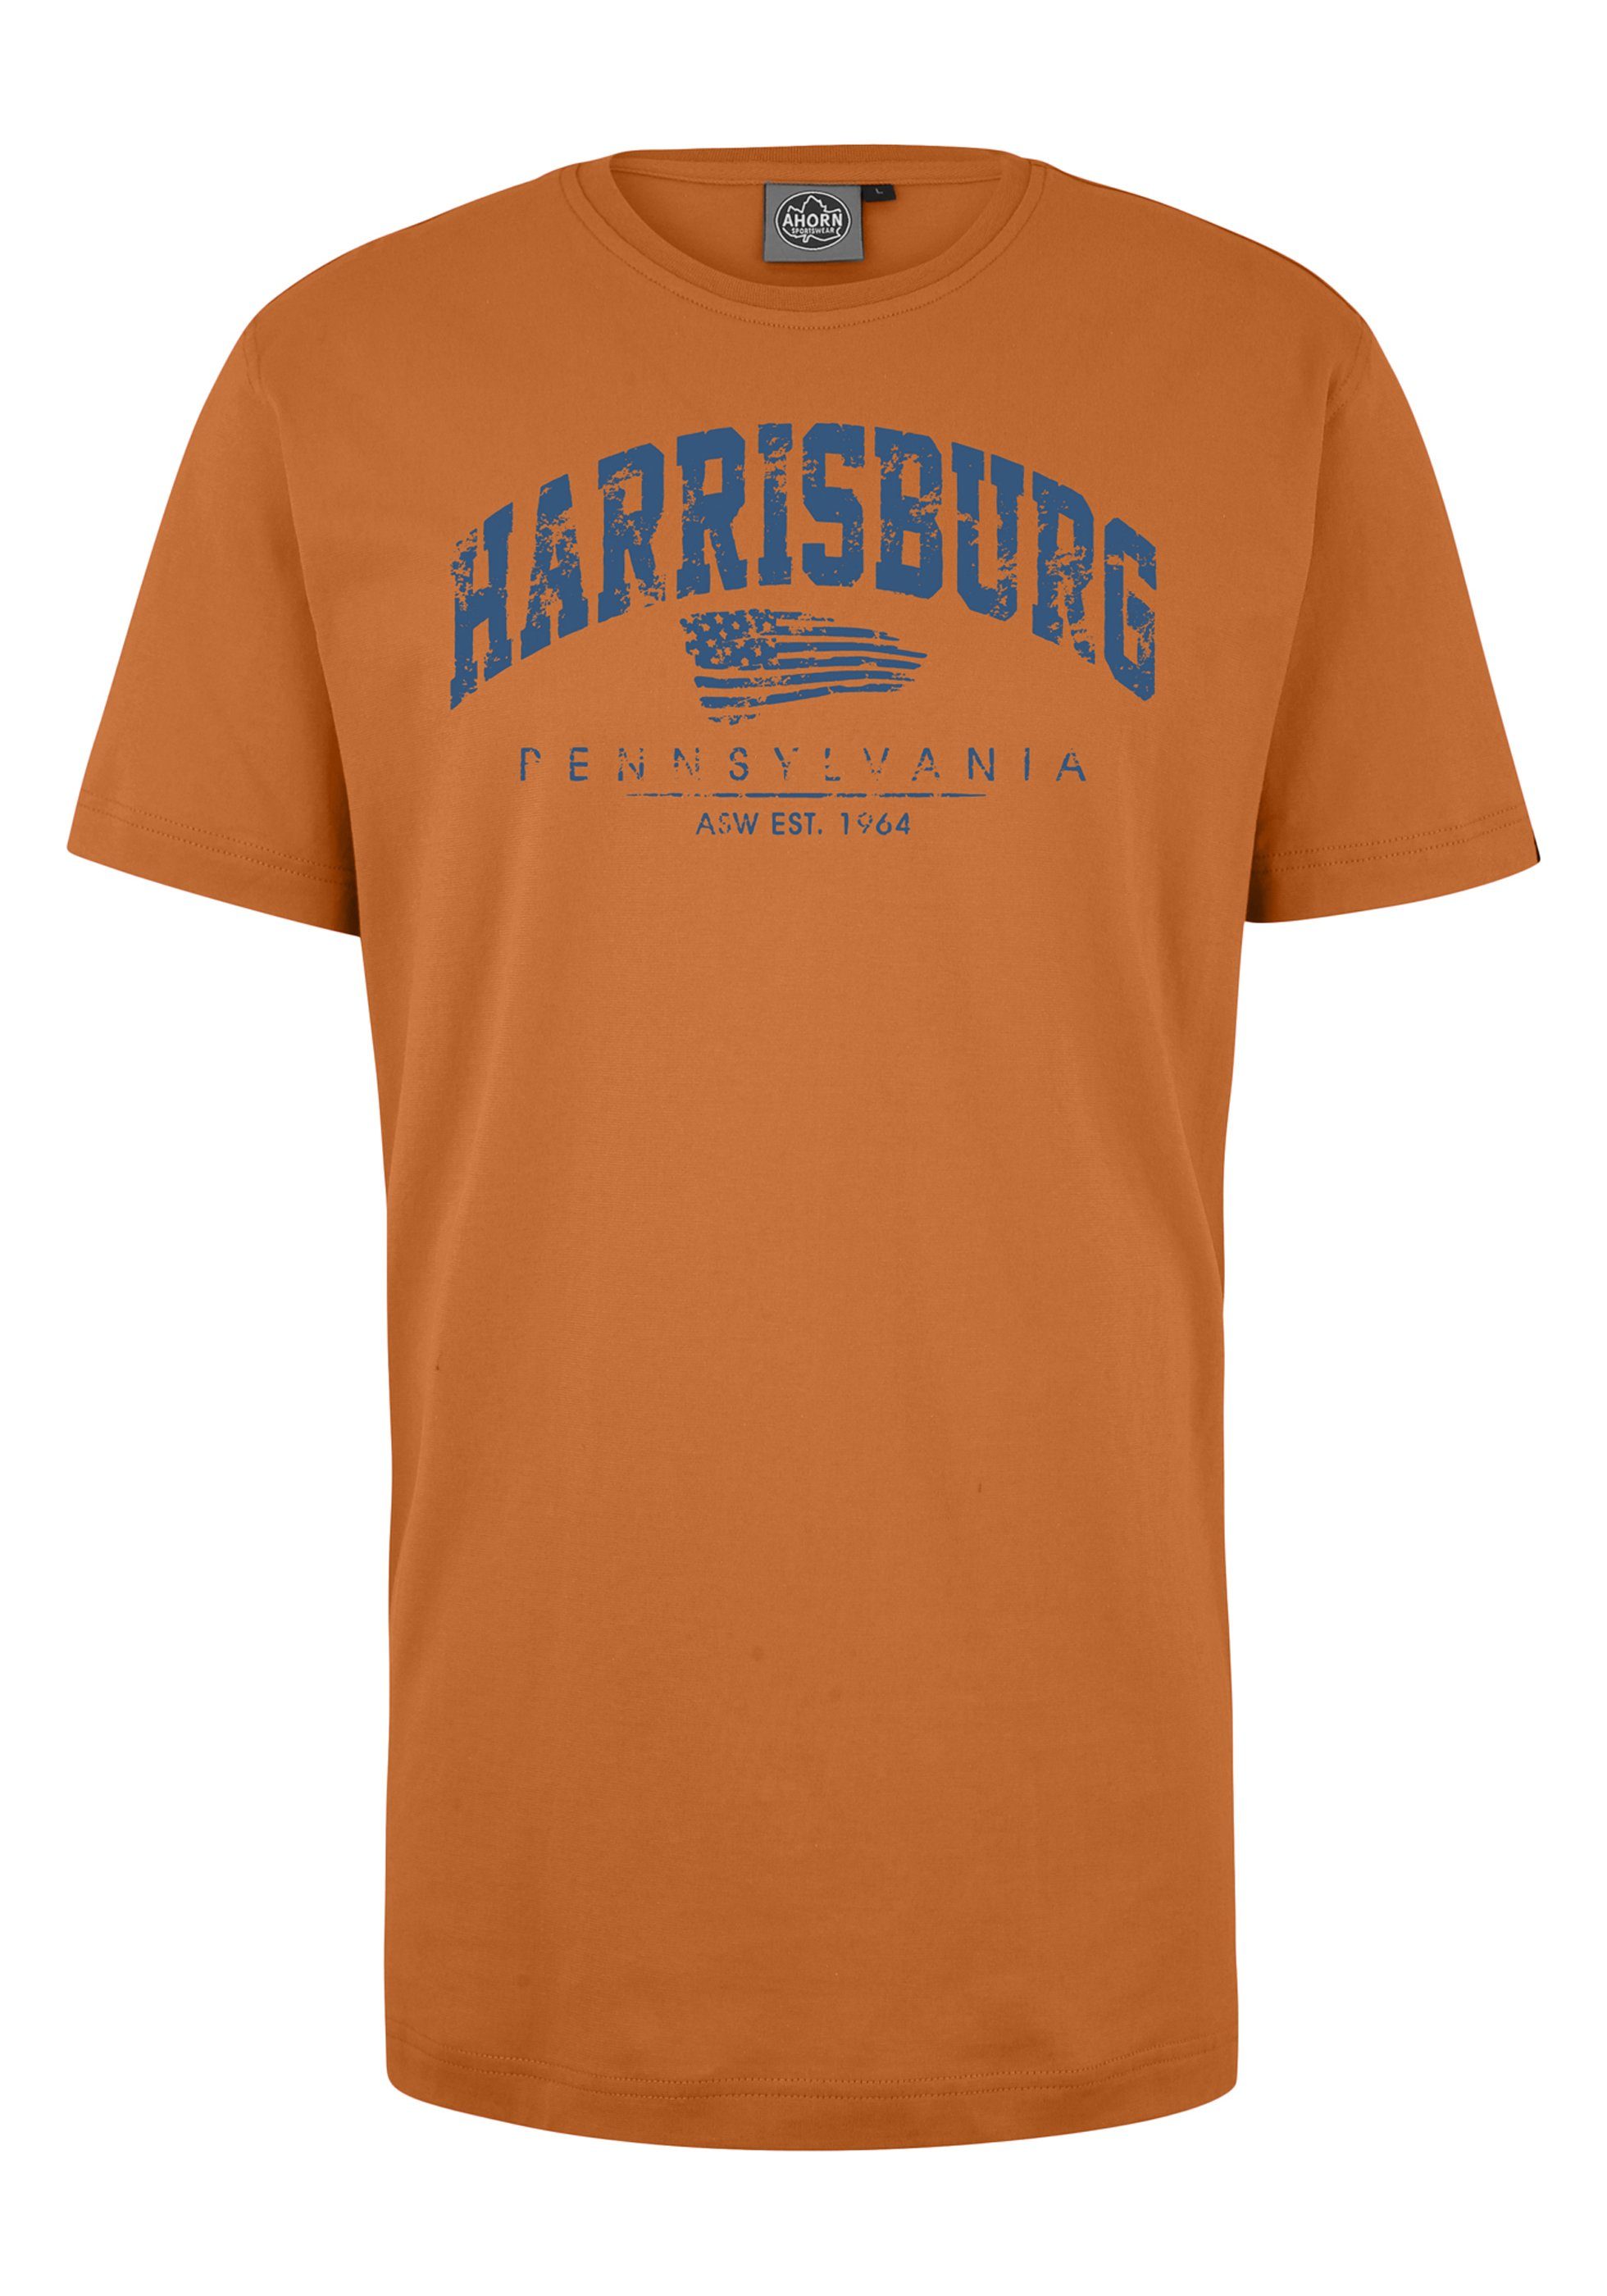 AHORN SPORTSWEAR BLUE modischem mit Frontprint orange T-Shirt HARRISBURG_ATLANTIC